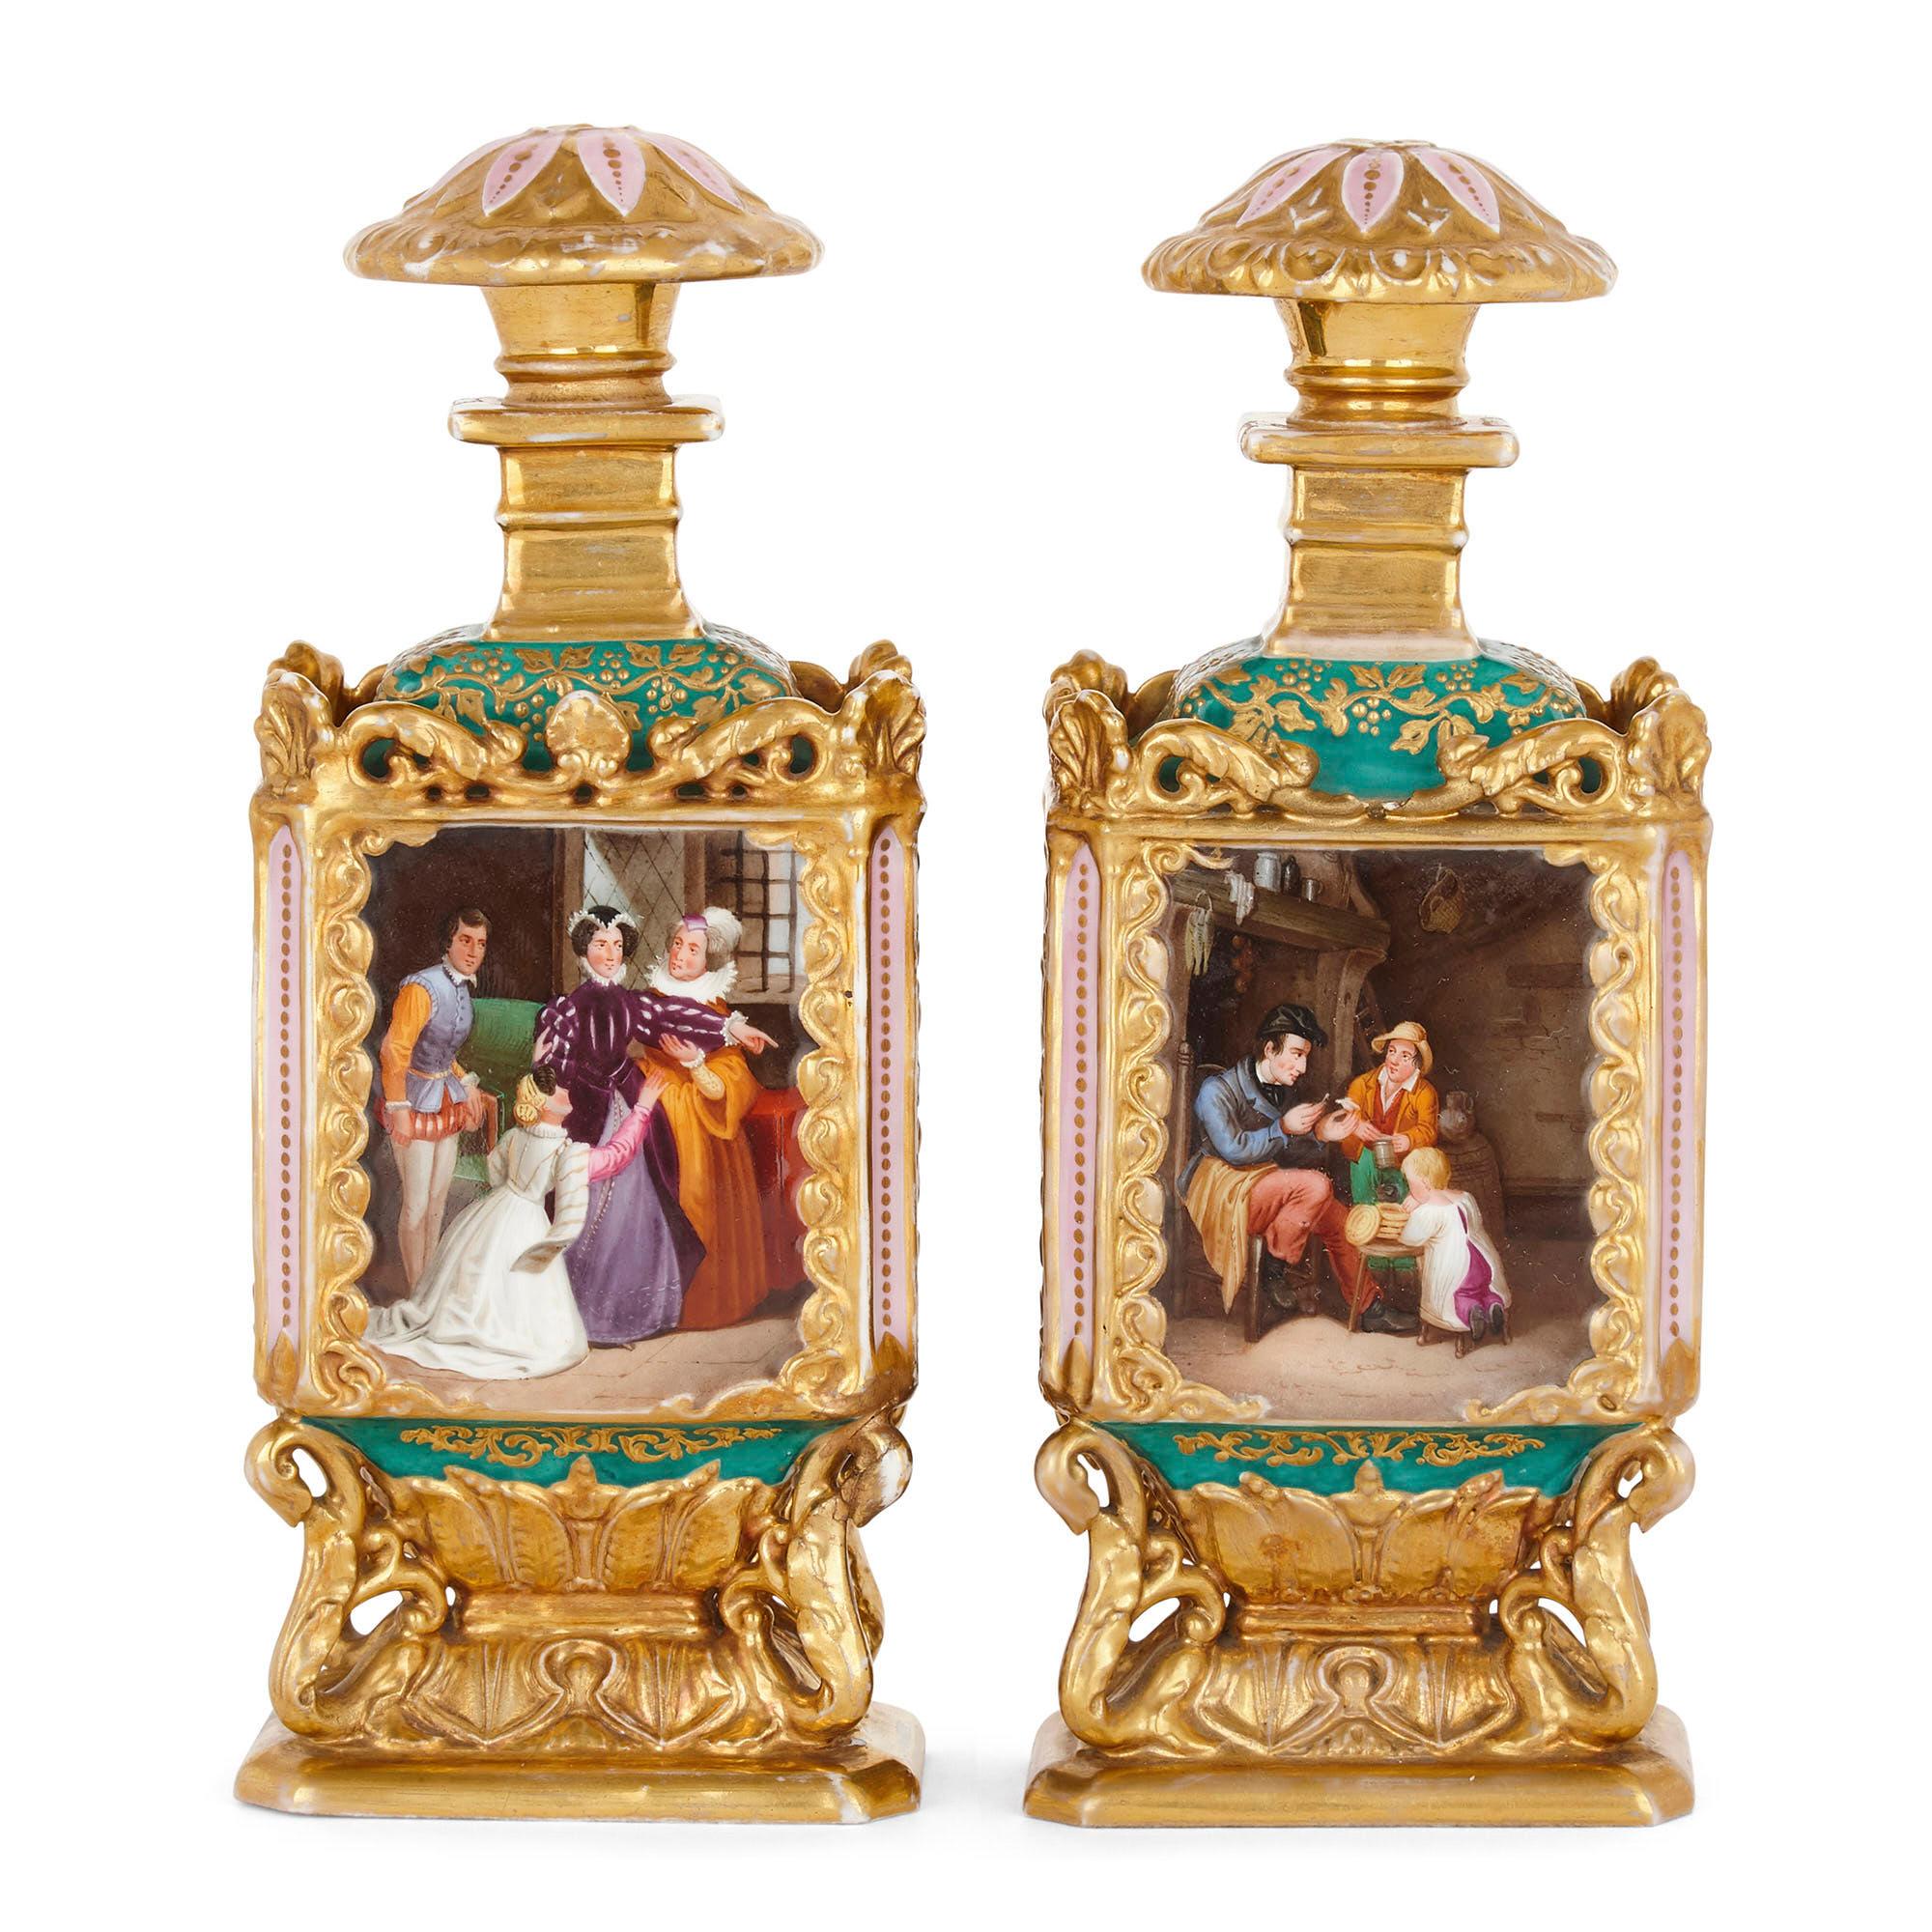 Paire de bouteilles en porcelaine dorée de style rococo, probablement de Jacob Petit
Français, 19ème siècle
Mesures : Hauteur 22,5 cm, largeur 9 cm, profondeur 6 cm.

Cette paire de bouteilles, attribuée à Jacob Petit, est fabriquée en